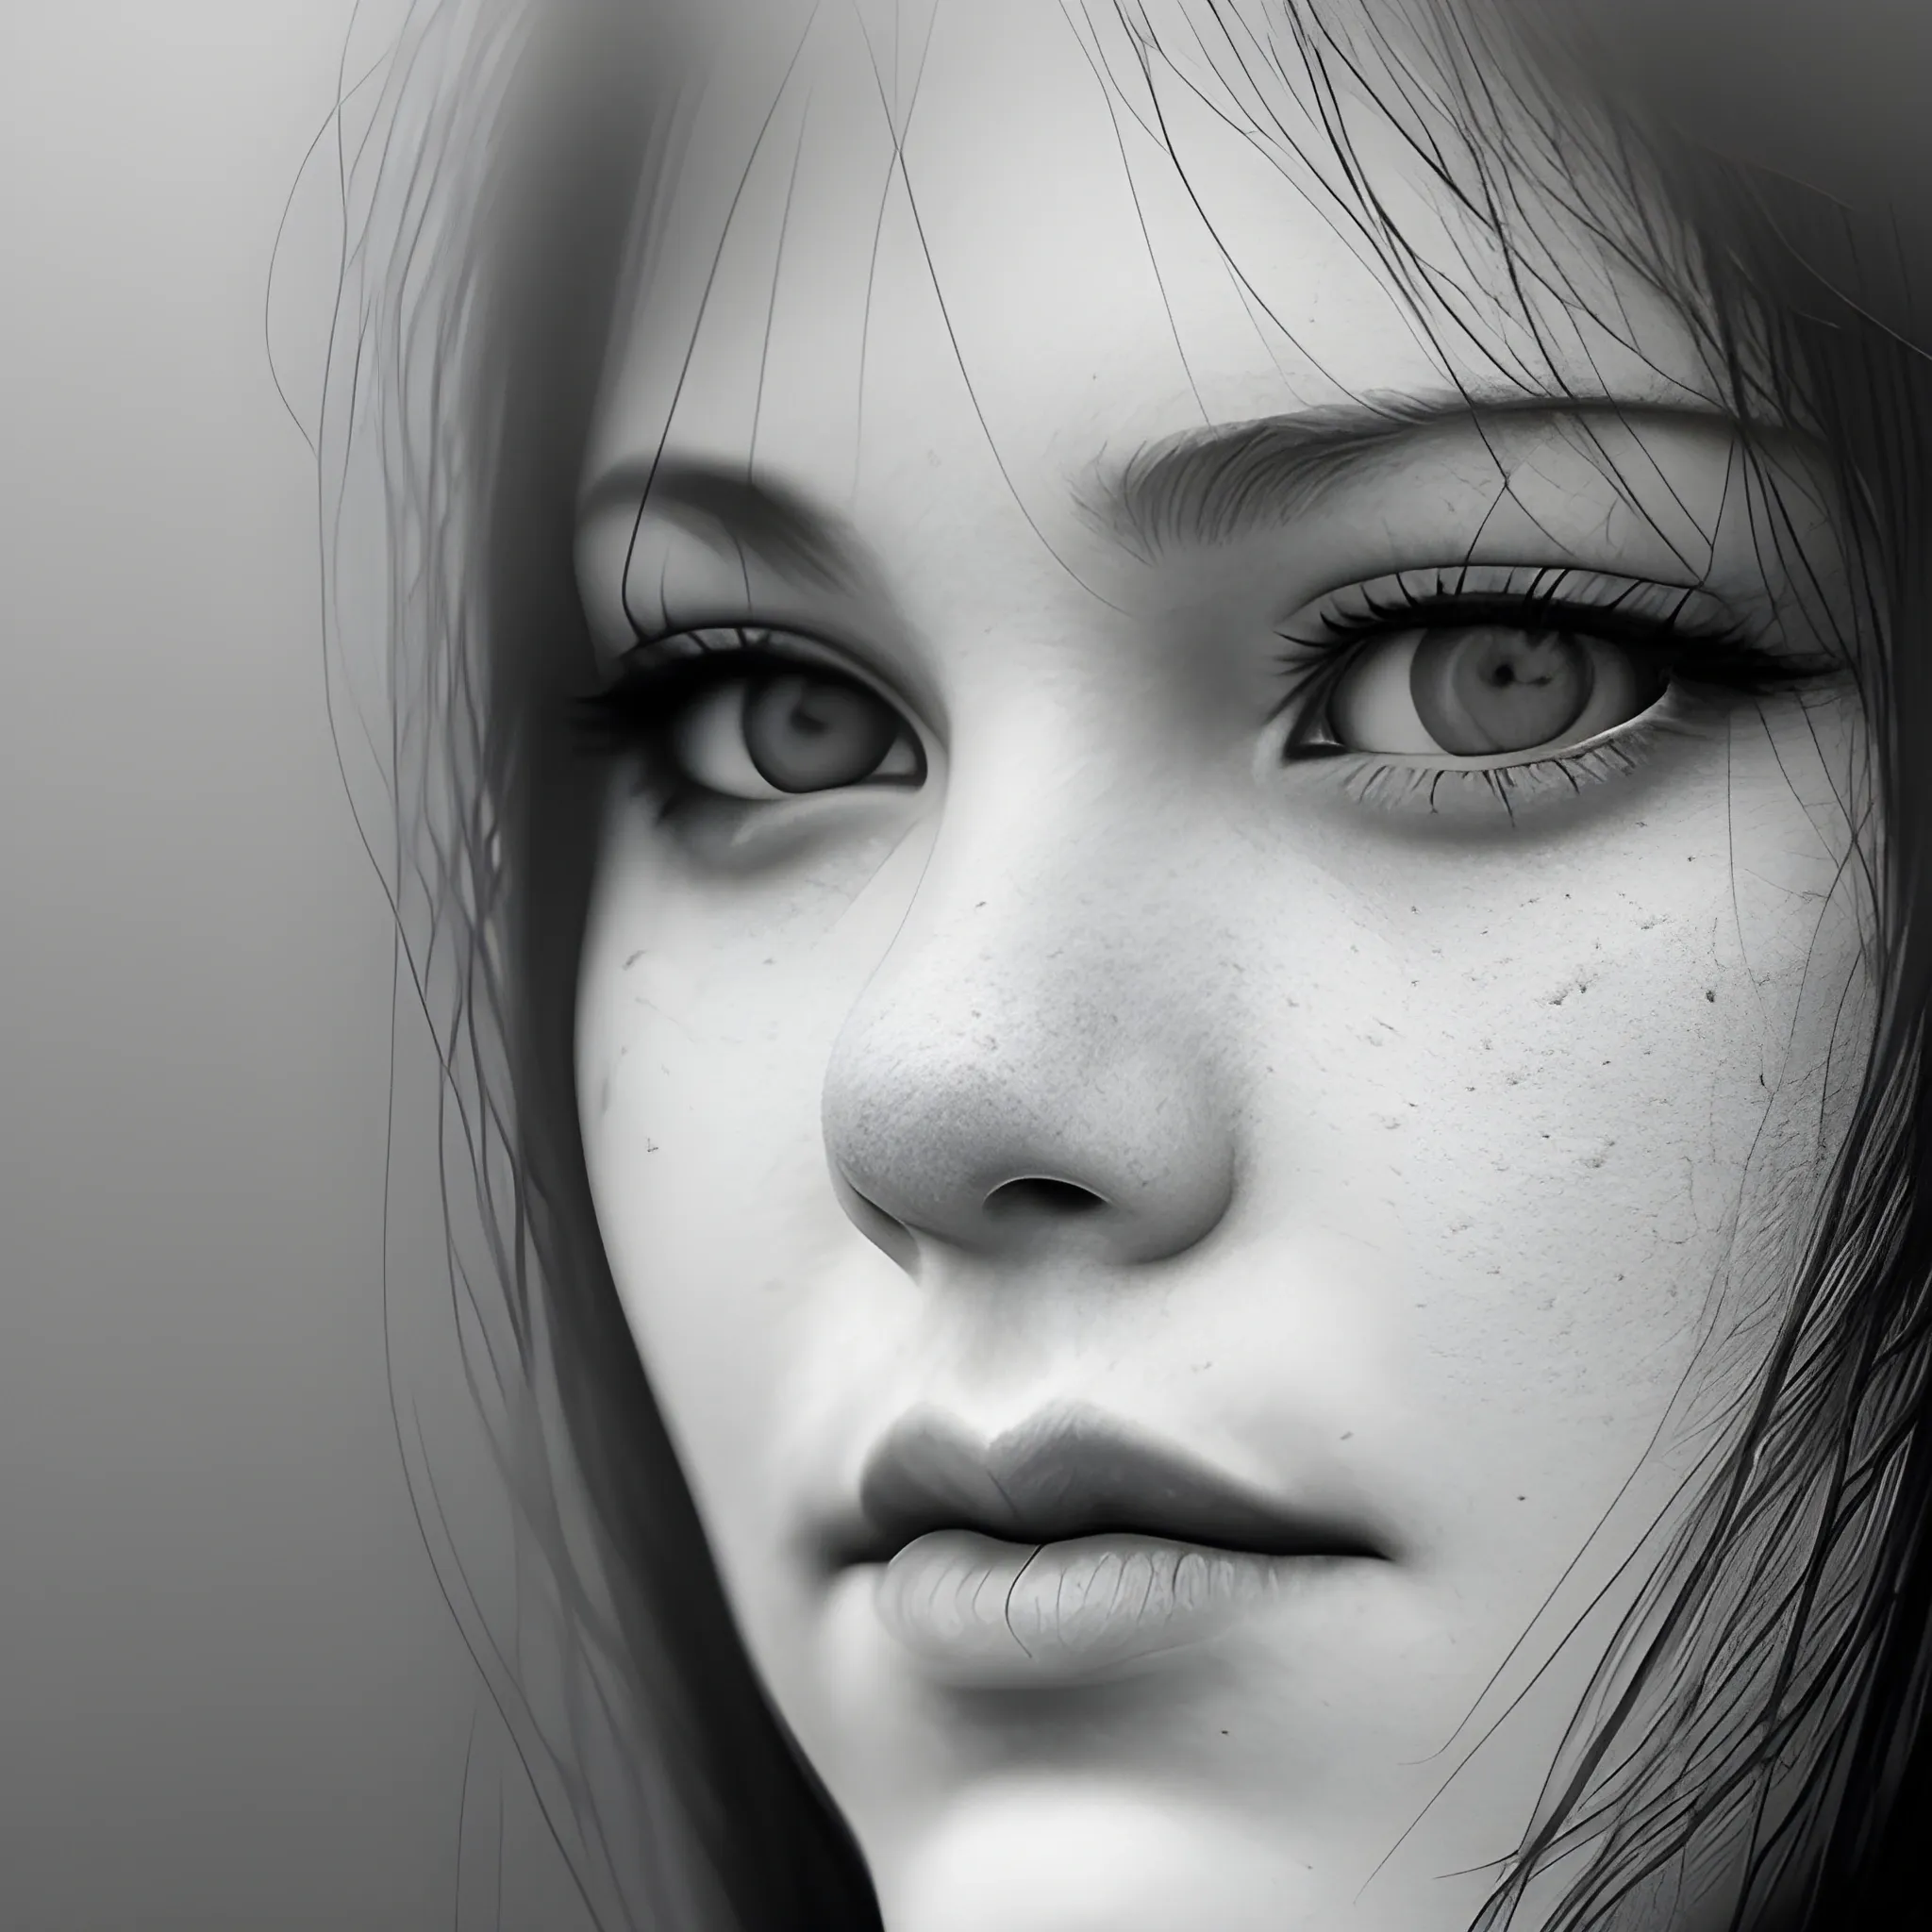 female portrait face, close up, foggy background, monochrome